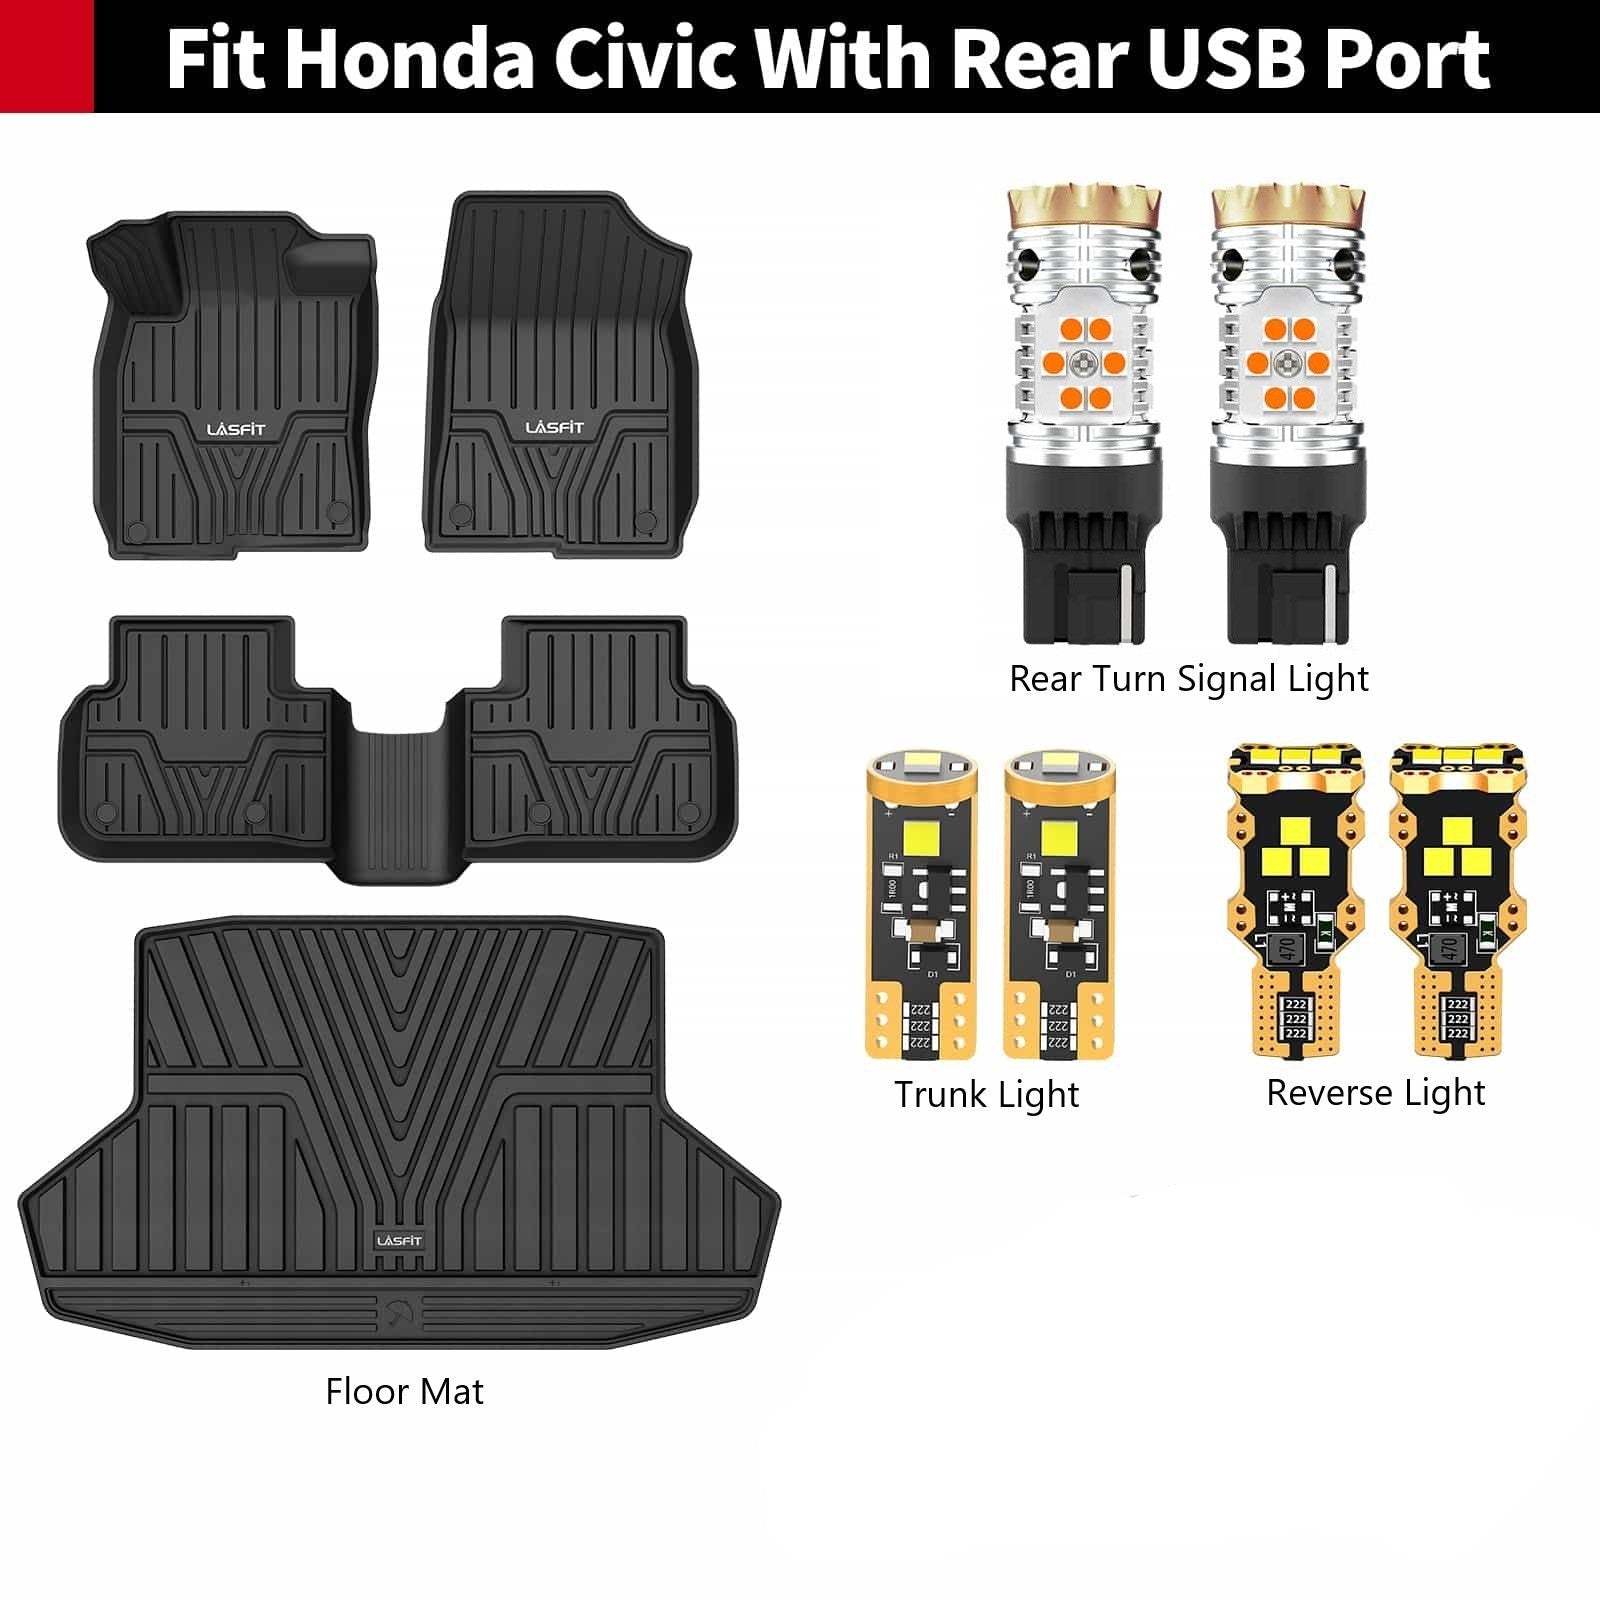 FAQ - Car Parts  Fernandez Honda